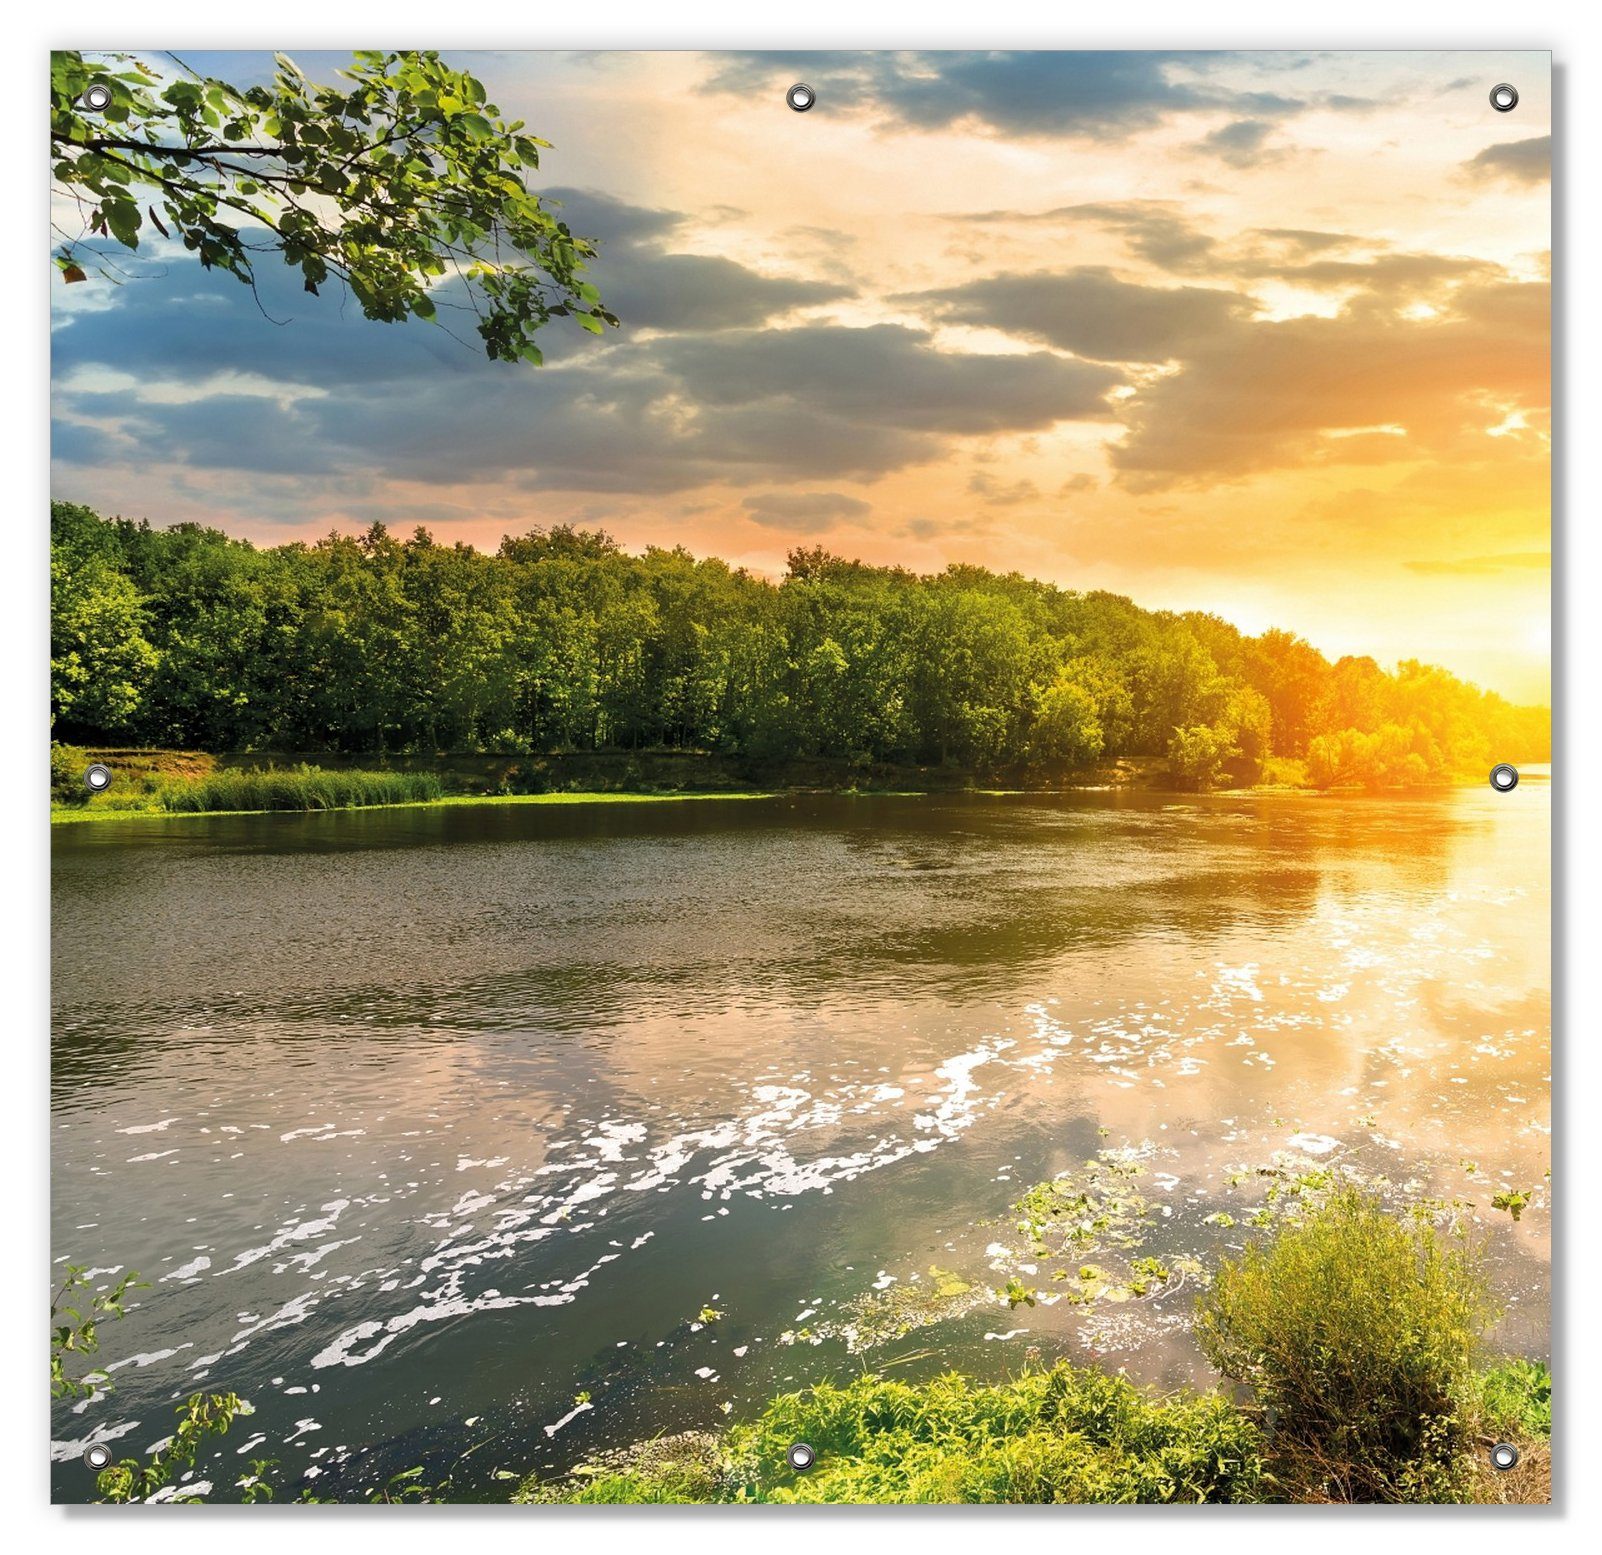 grüner Fluss wiederverwendbar in Saugnäpfen, mit Umgebung, Sonnenuntergang am und Wallario, Sonnenschutz blickdicht, wiederablösbar